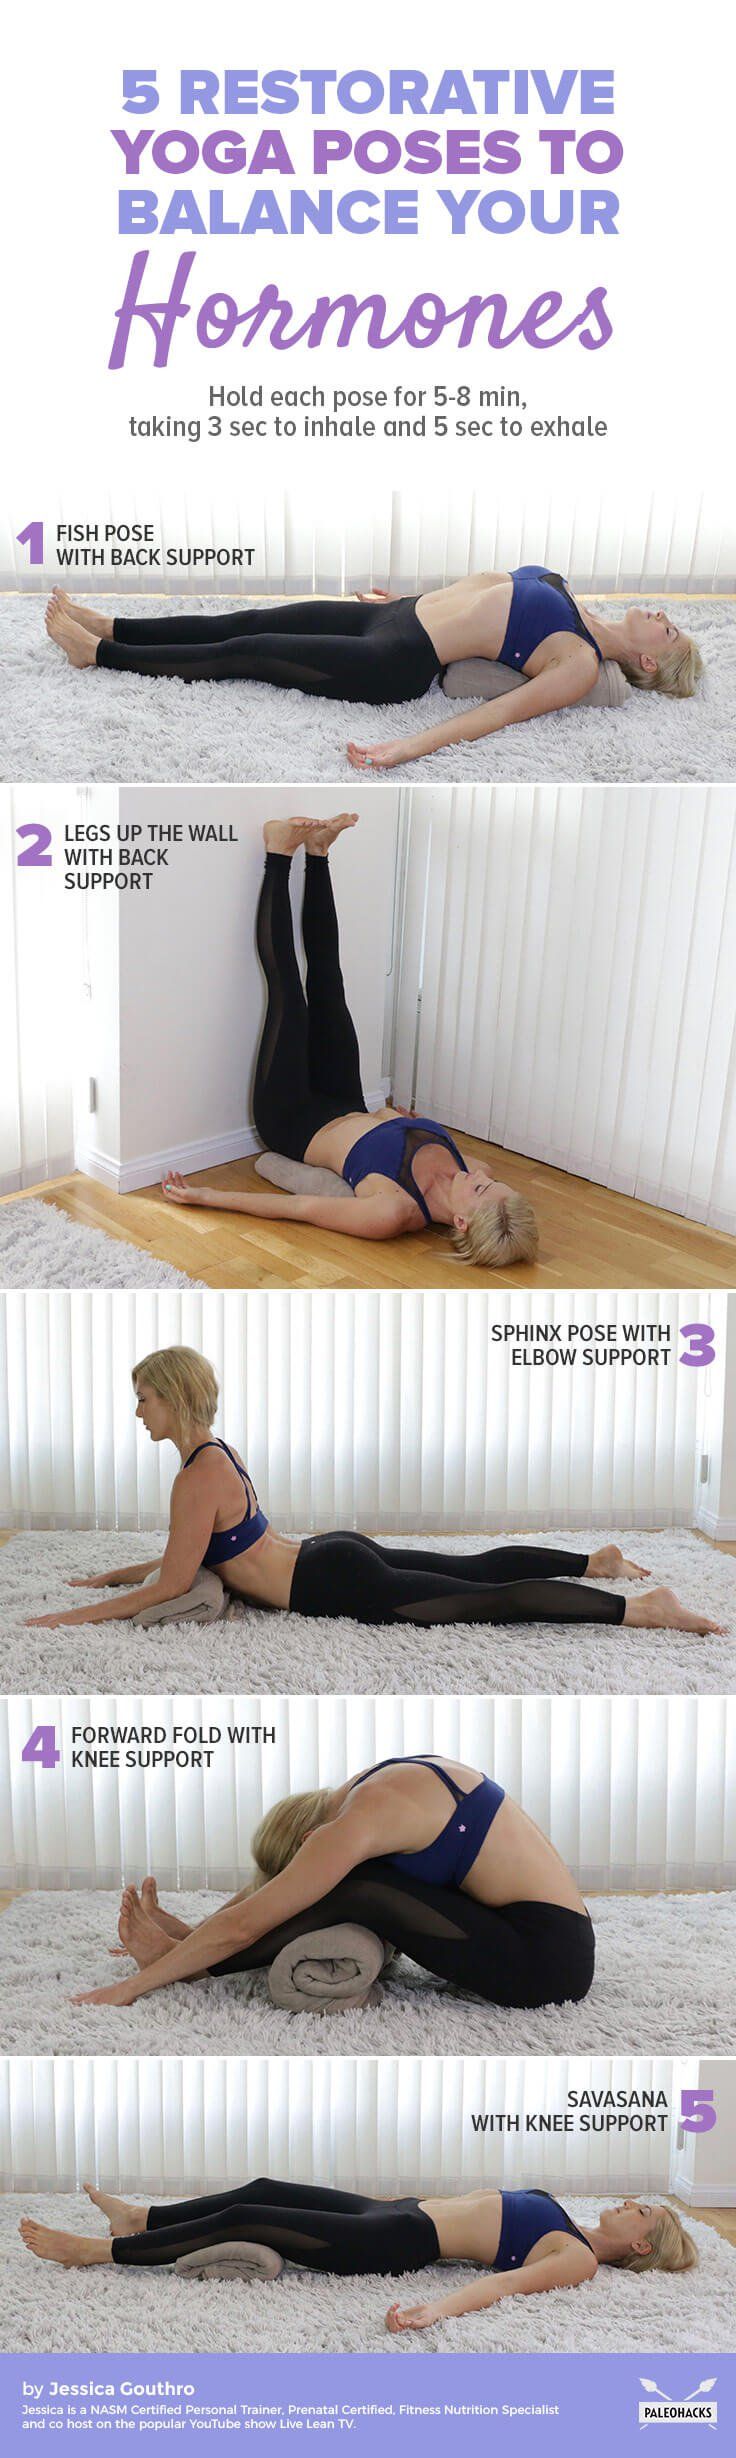 Yoga, hormones restoring poses